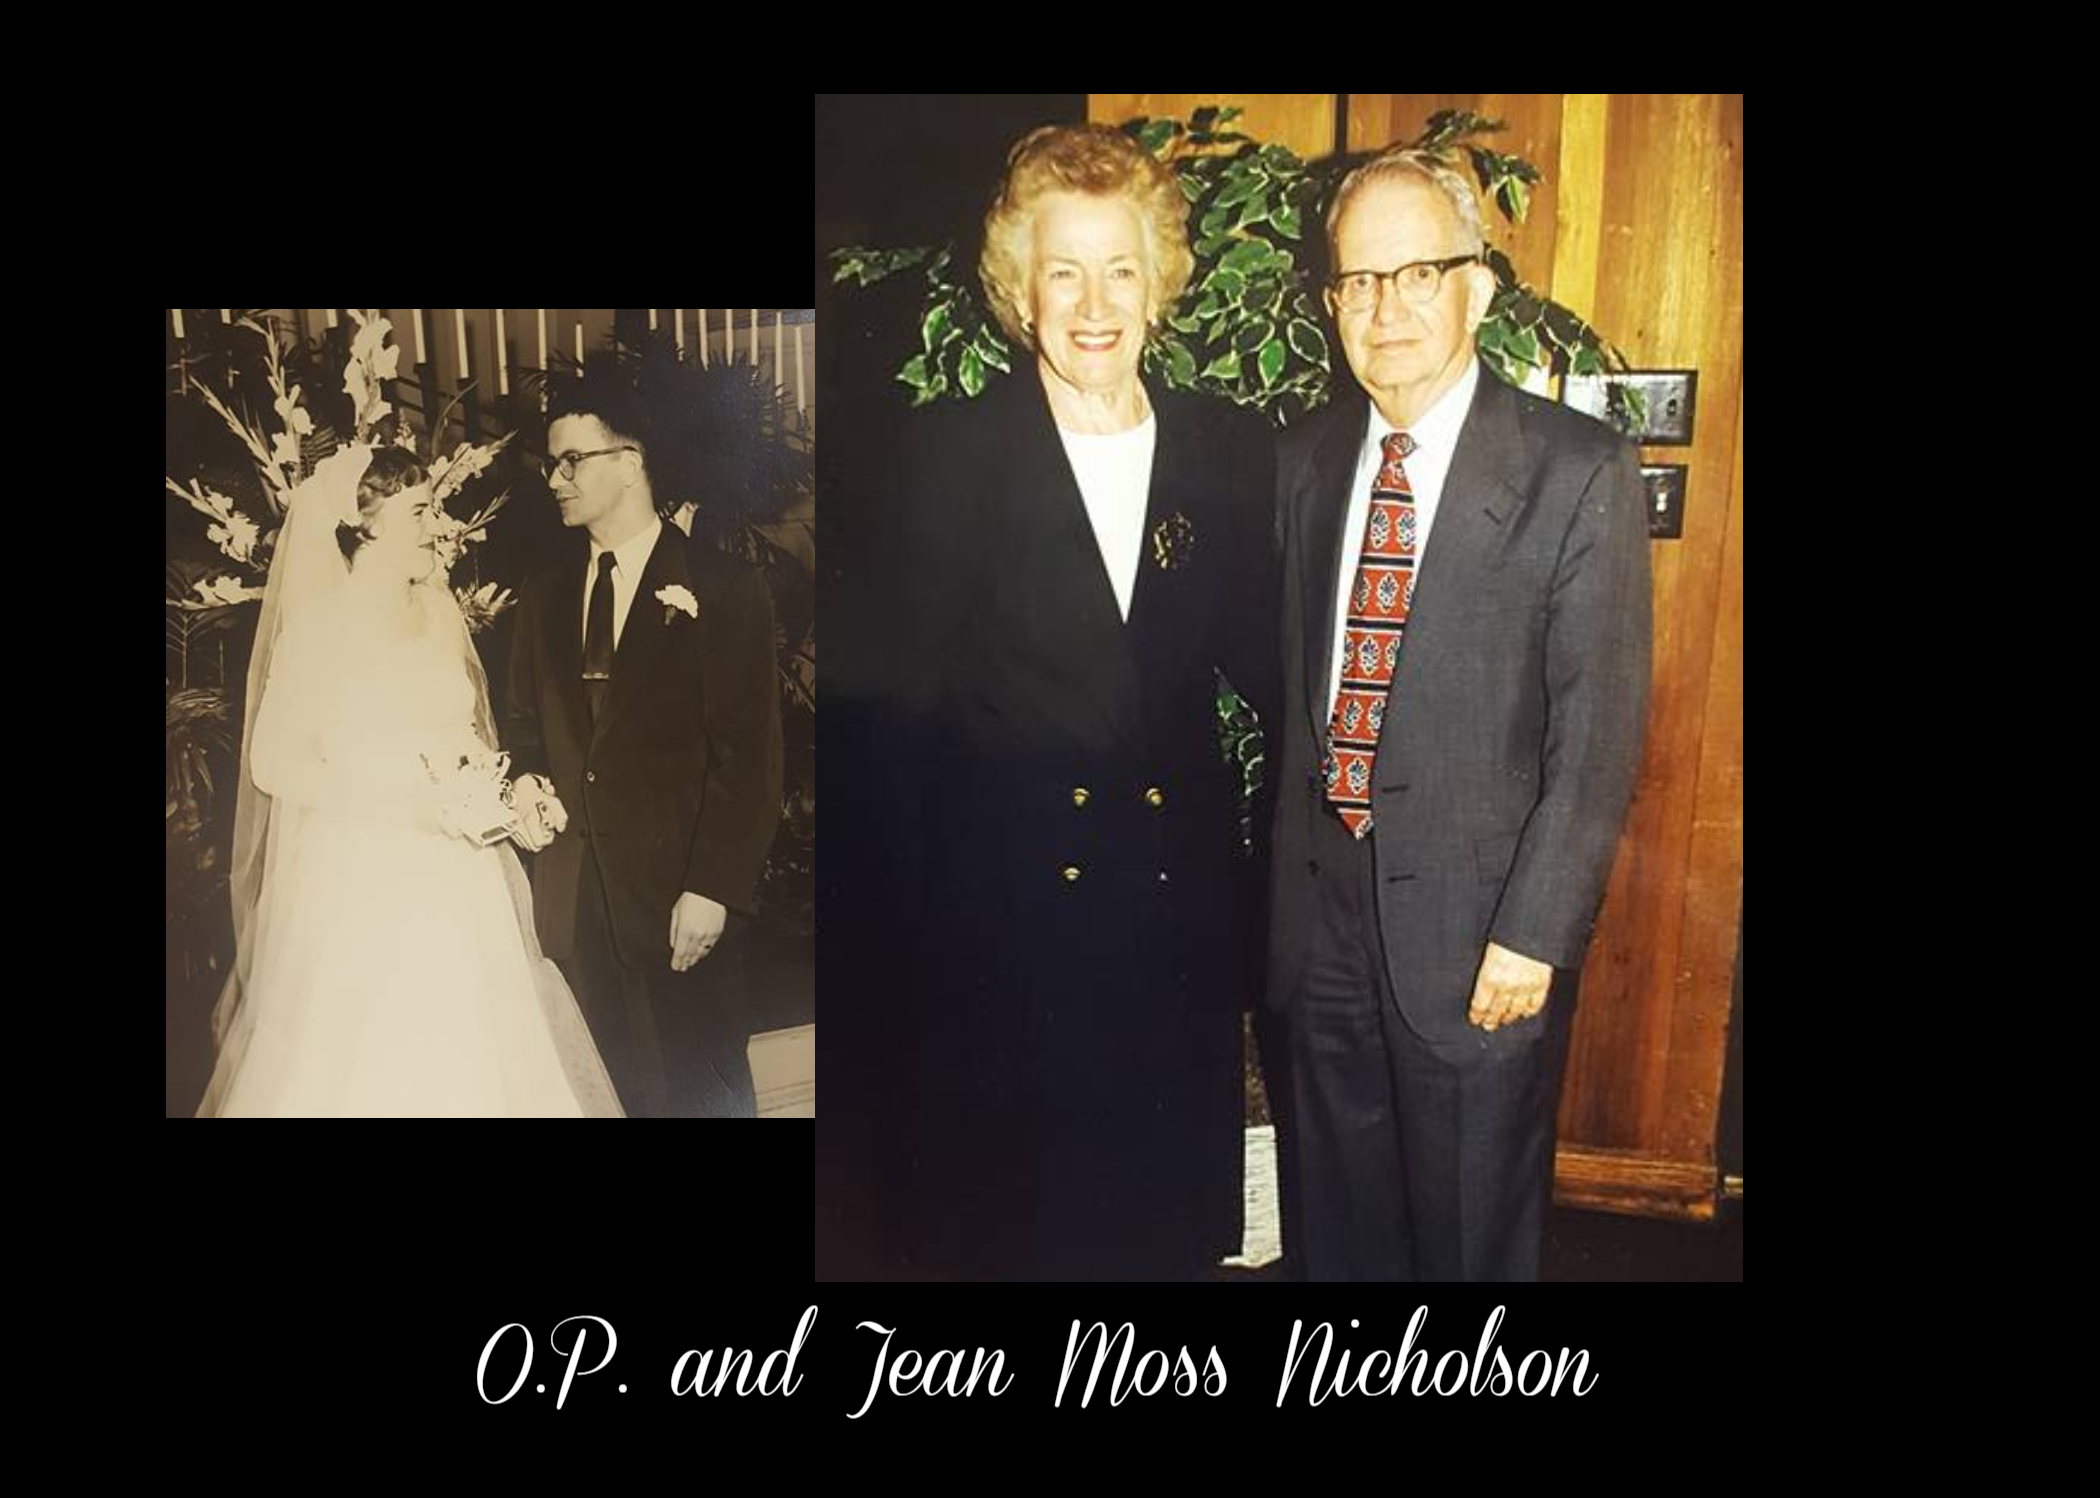 Dr. O.P. & Jean Moss Nicholson - 2/24/18 - # 167 